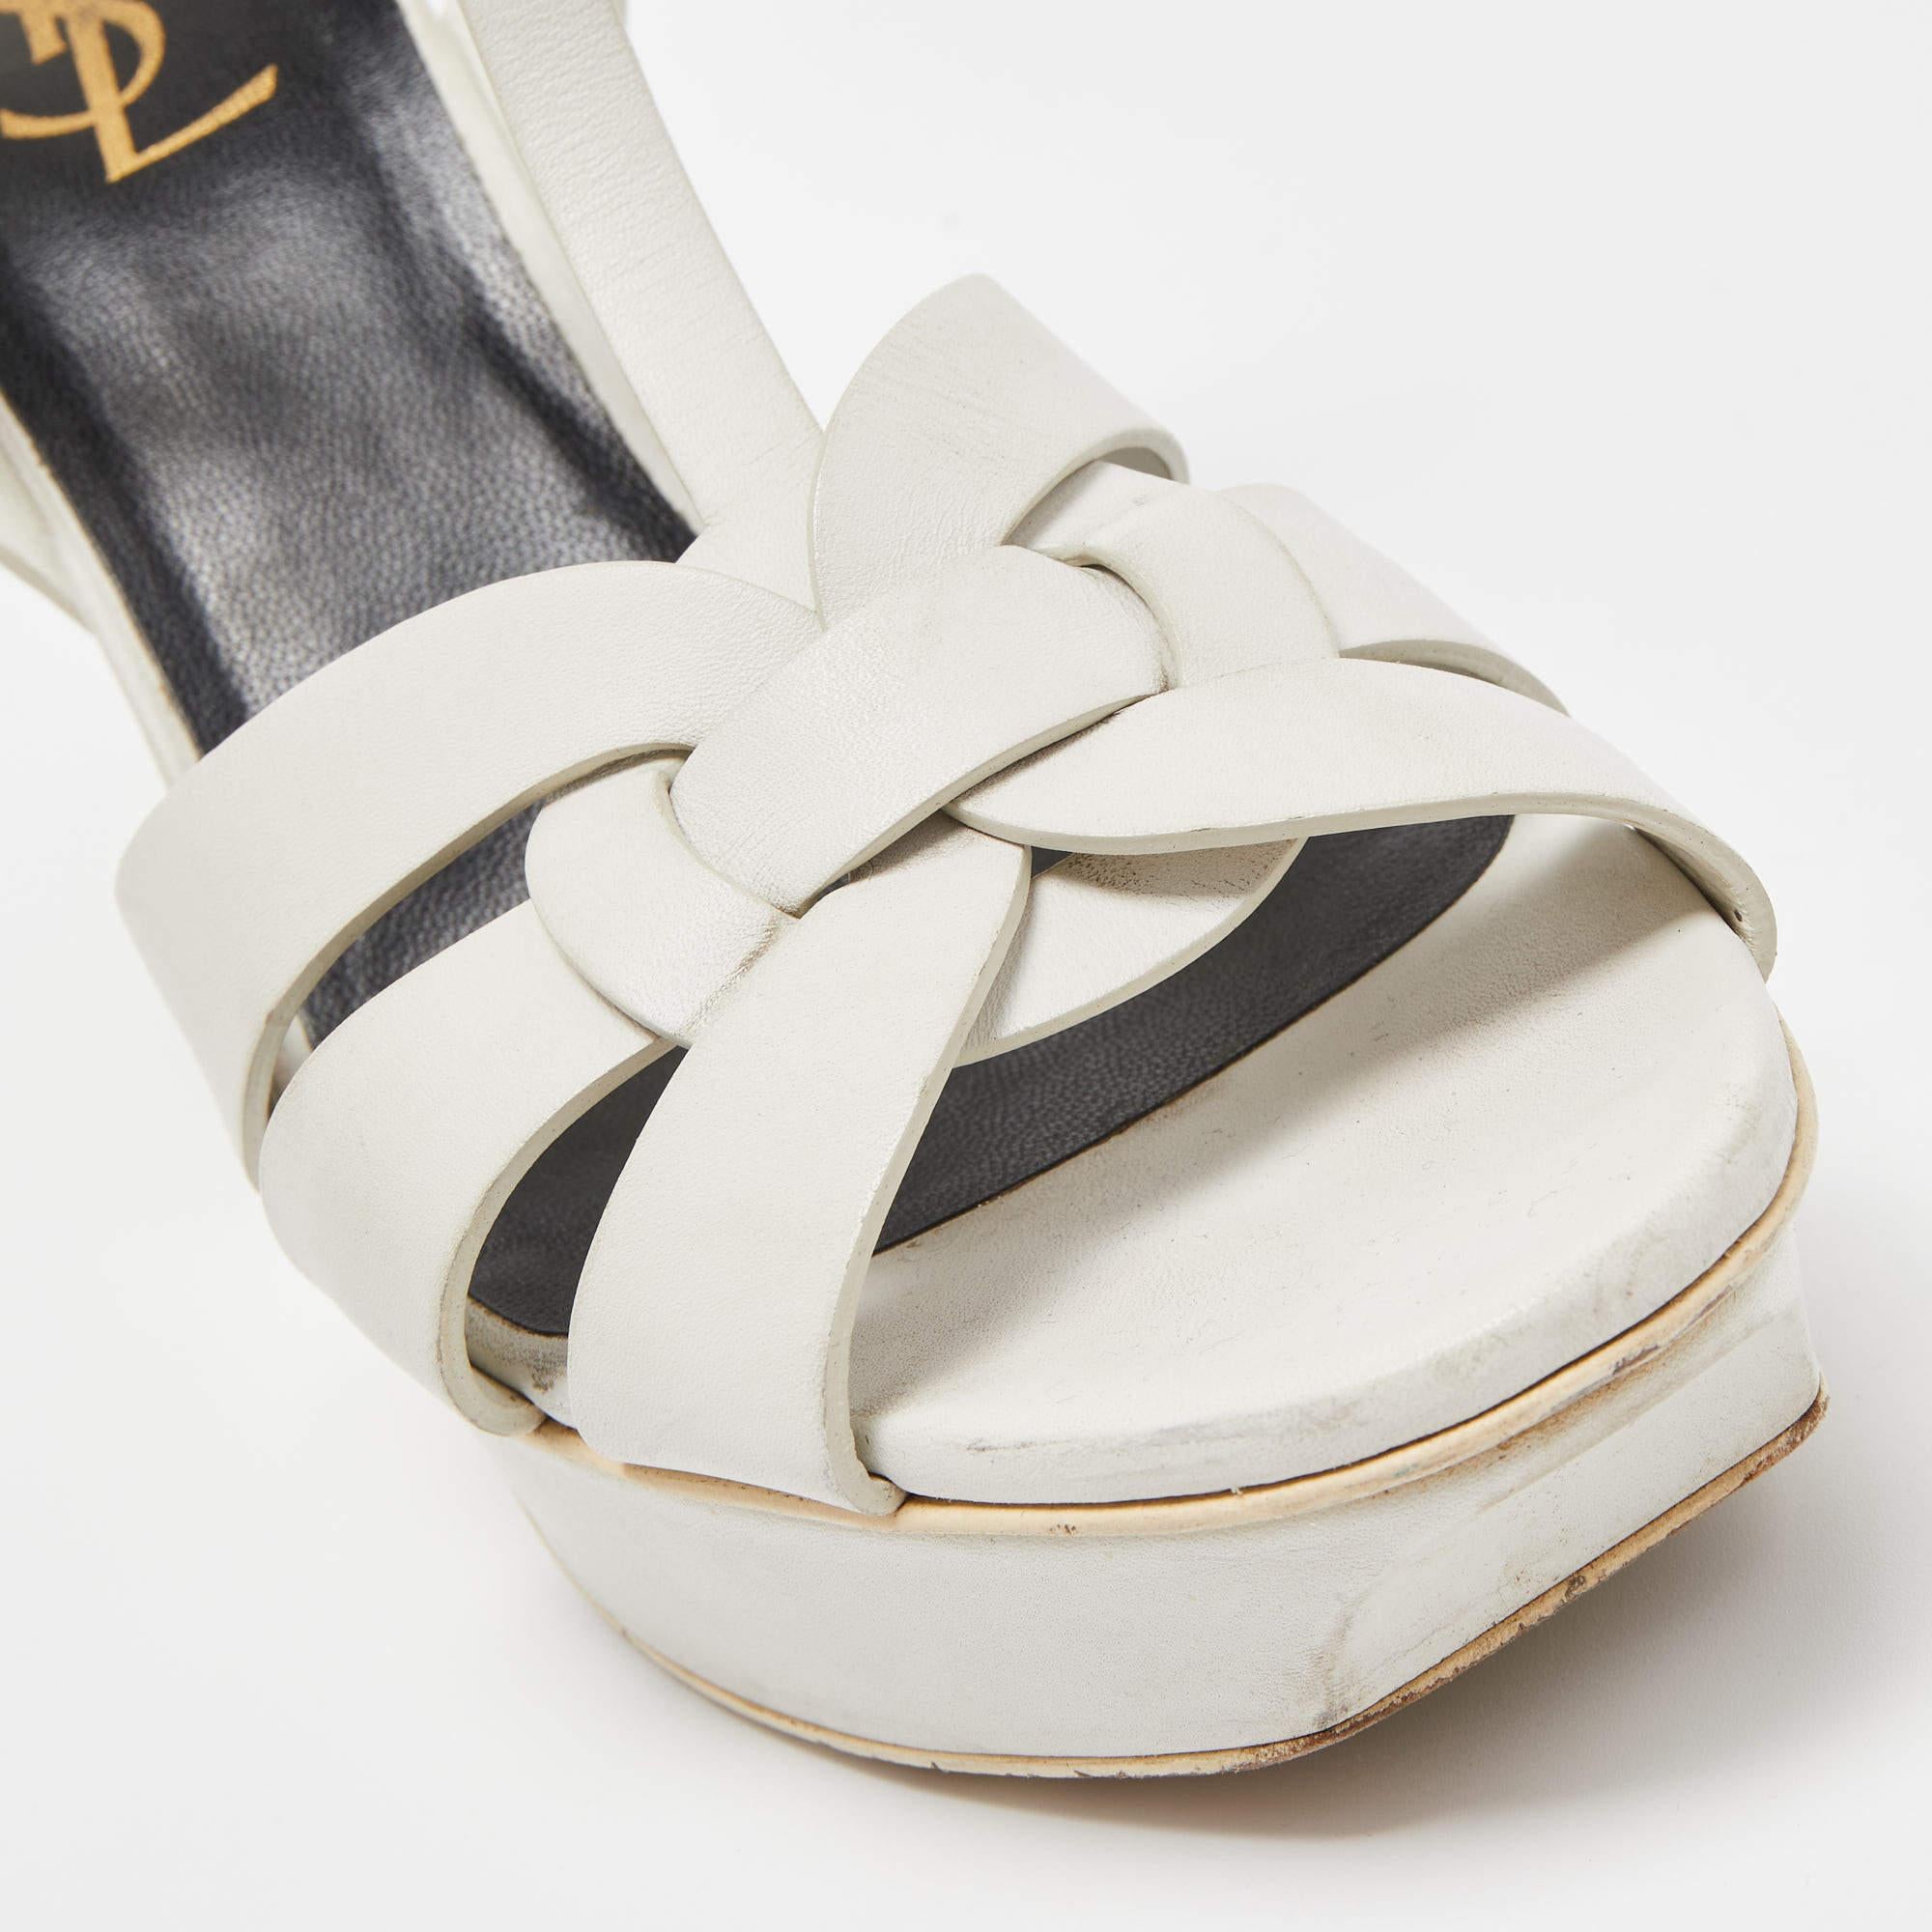 Saint Laurent White Leather Tribute Sandals Size 40 1